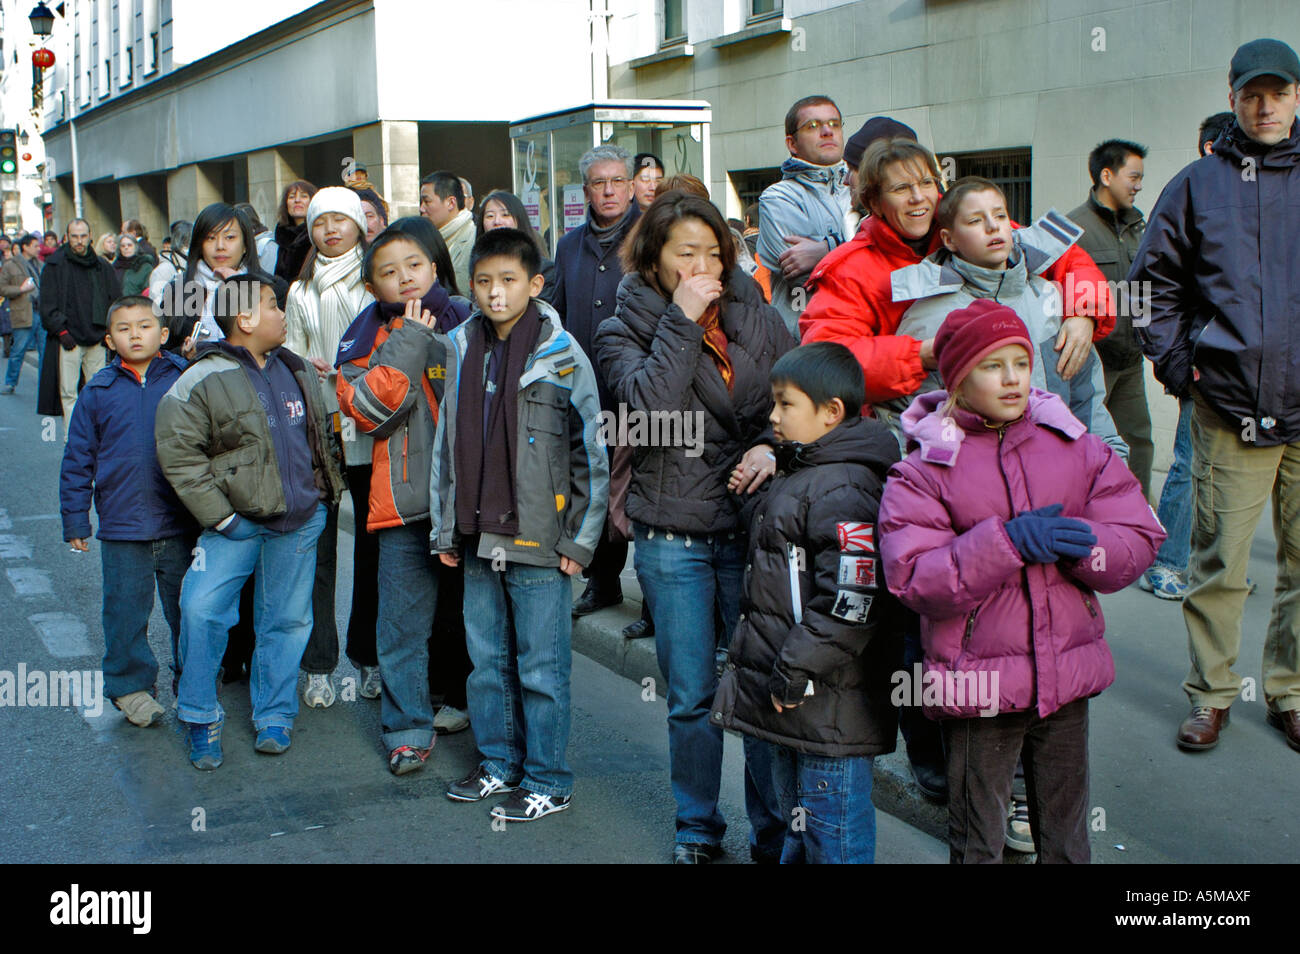 Paris France, diversité des lieux de foule avec des familles asiatiques avec des enfants, célébration du « nouvel an chinois » au Festival de rue, célébration de différentes cultures Banque D'Images